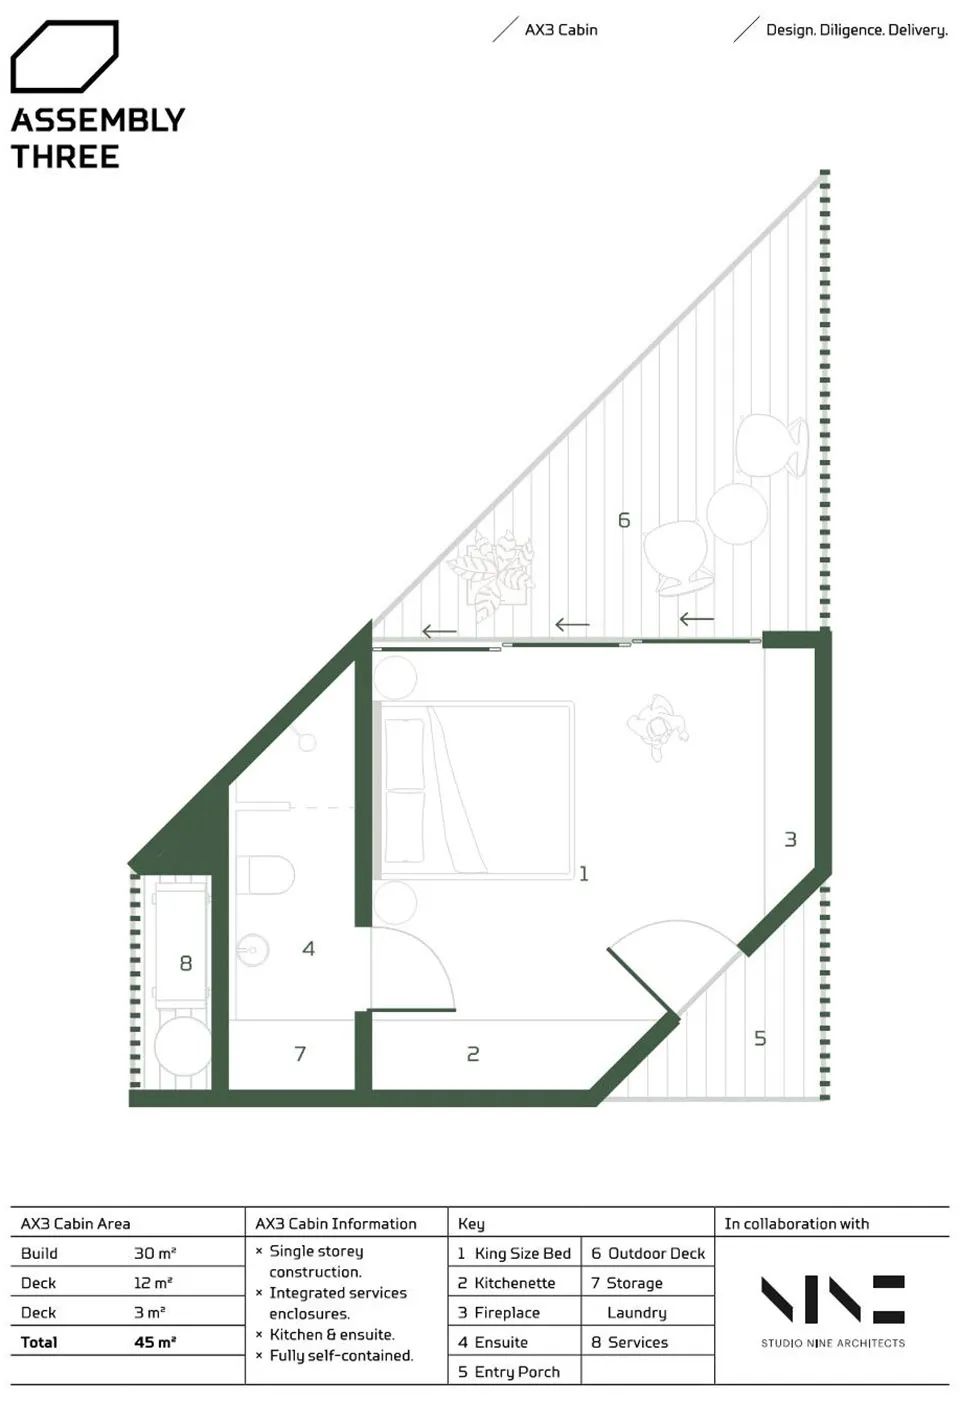 度假木屋平面圖 模組化的永續木構造建築，澳洲組合式木屋Assembly Three／Studio Nine Architects